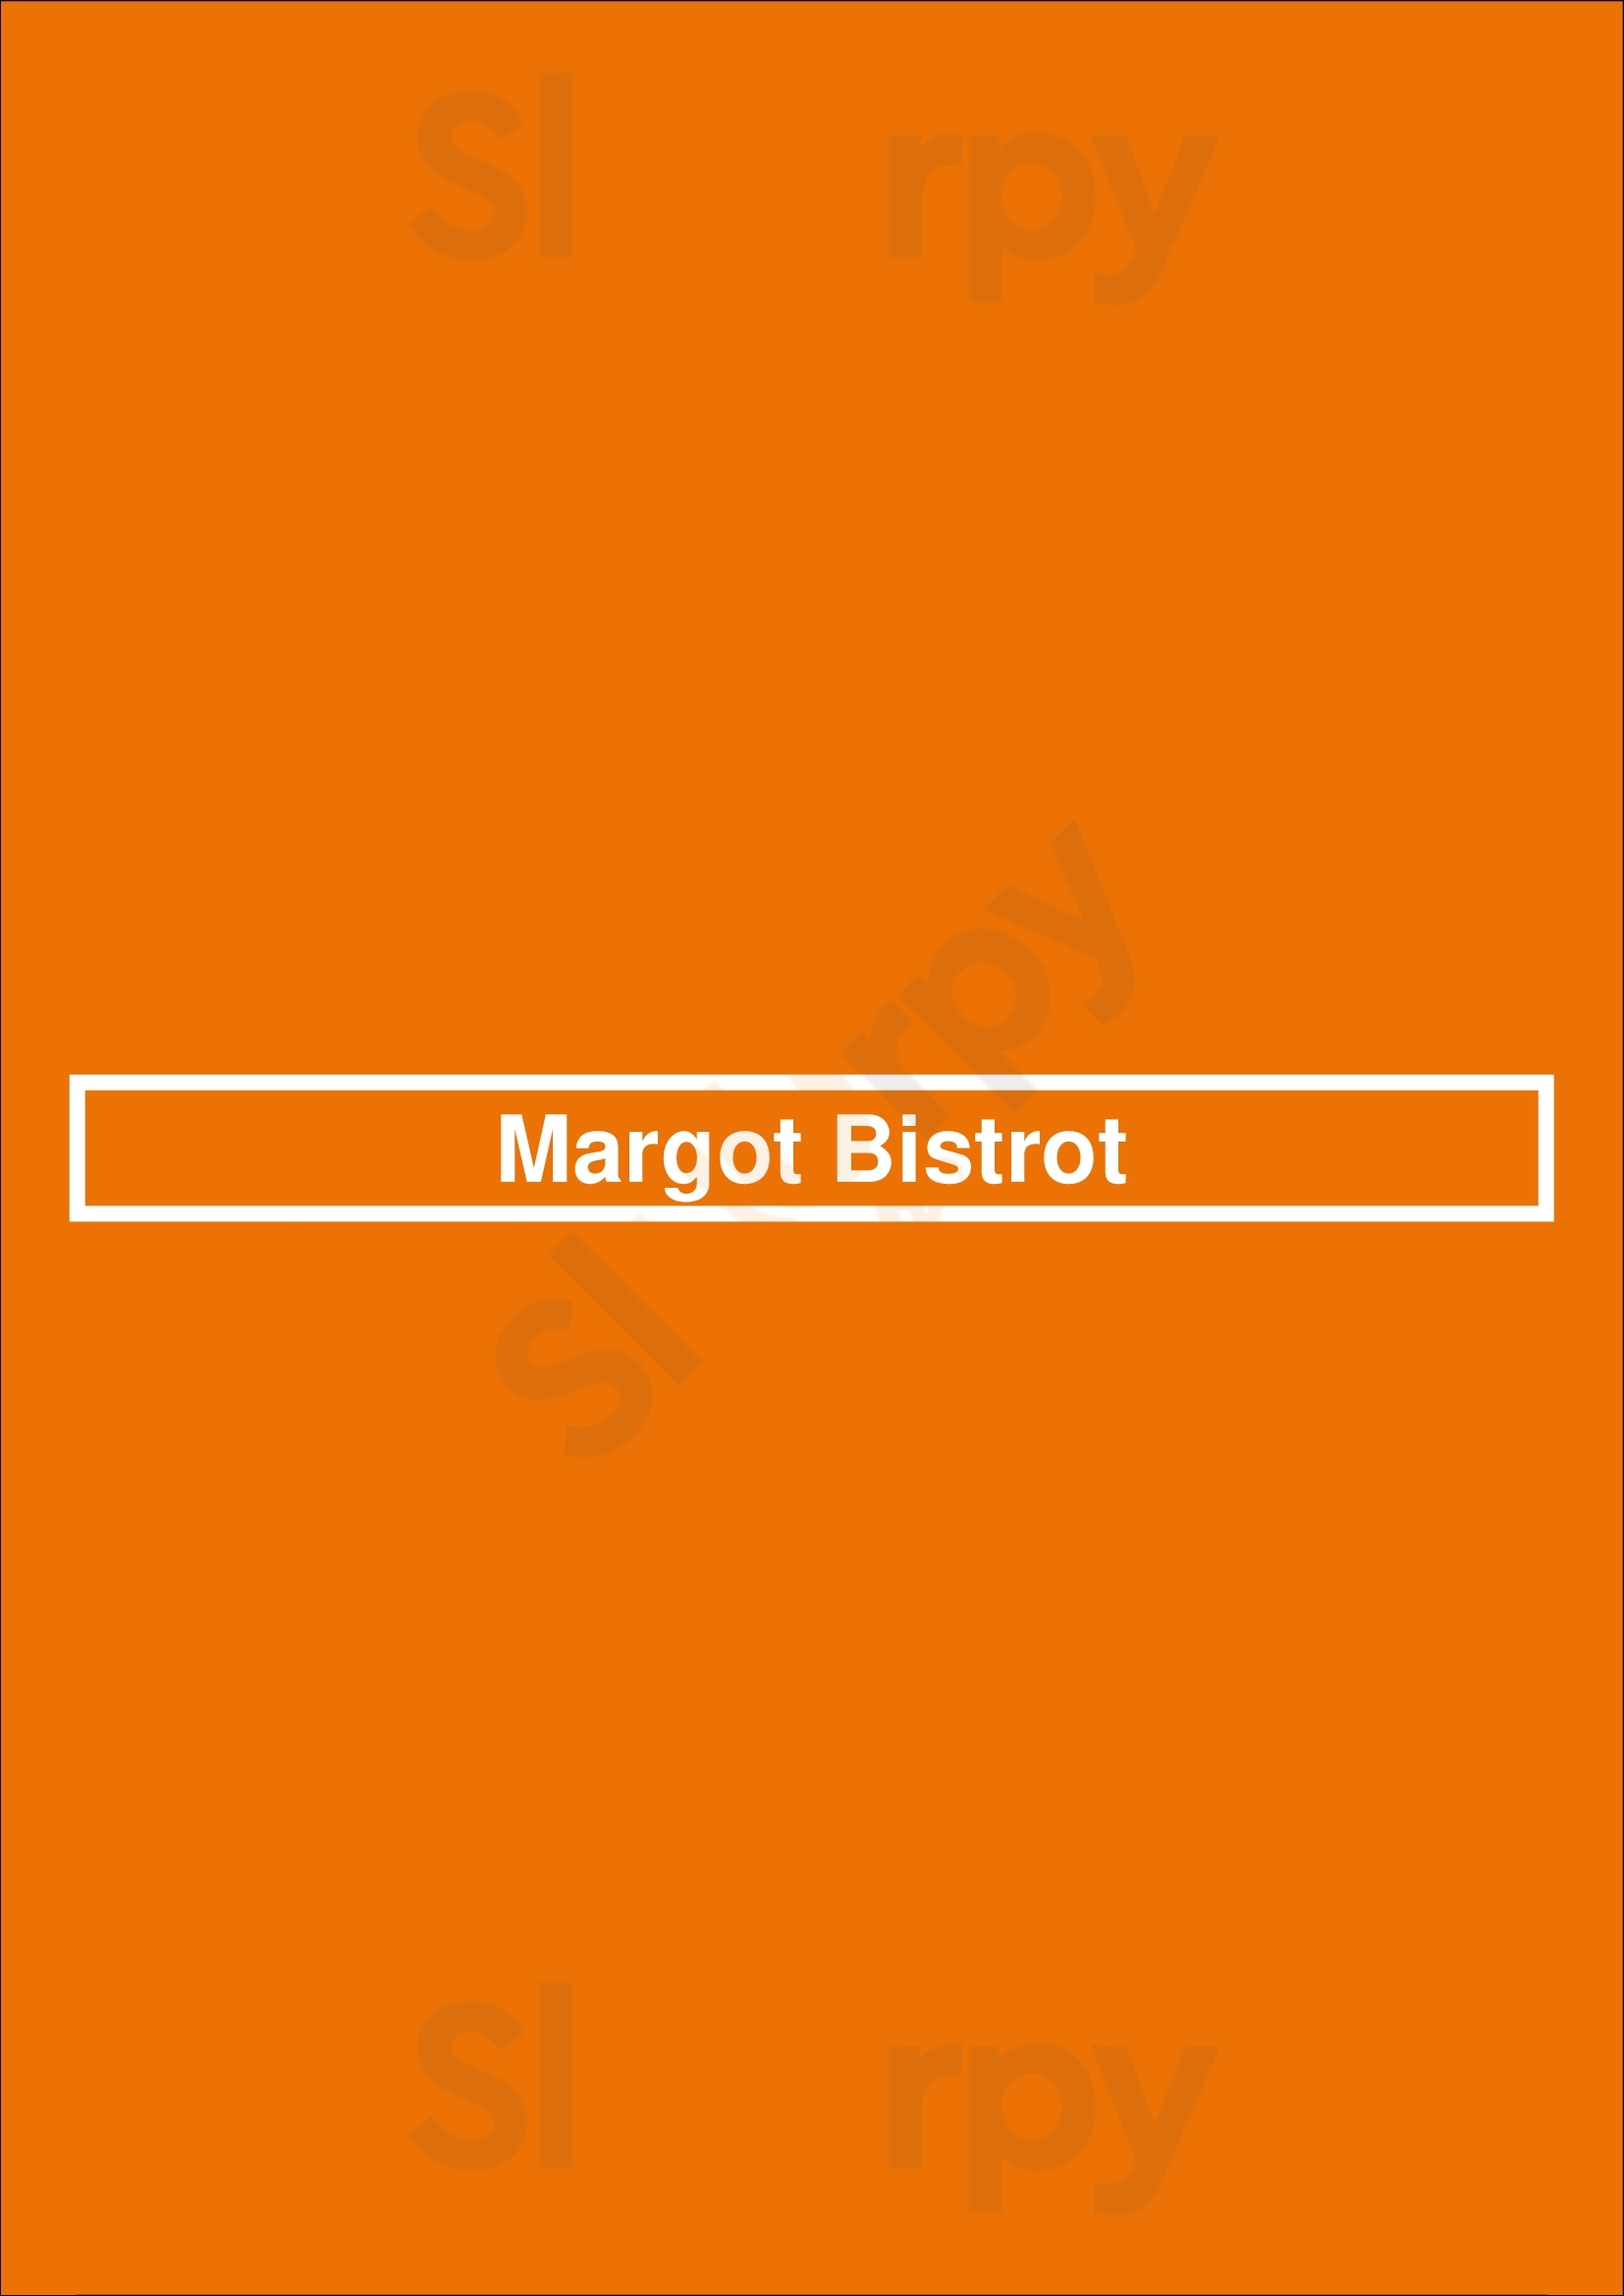 Margot Bistrot São Paulo Menu - 1